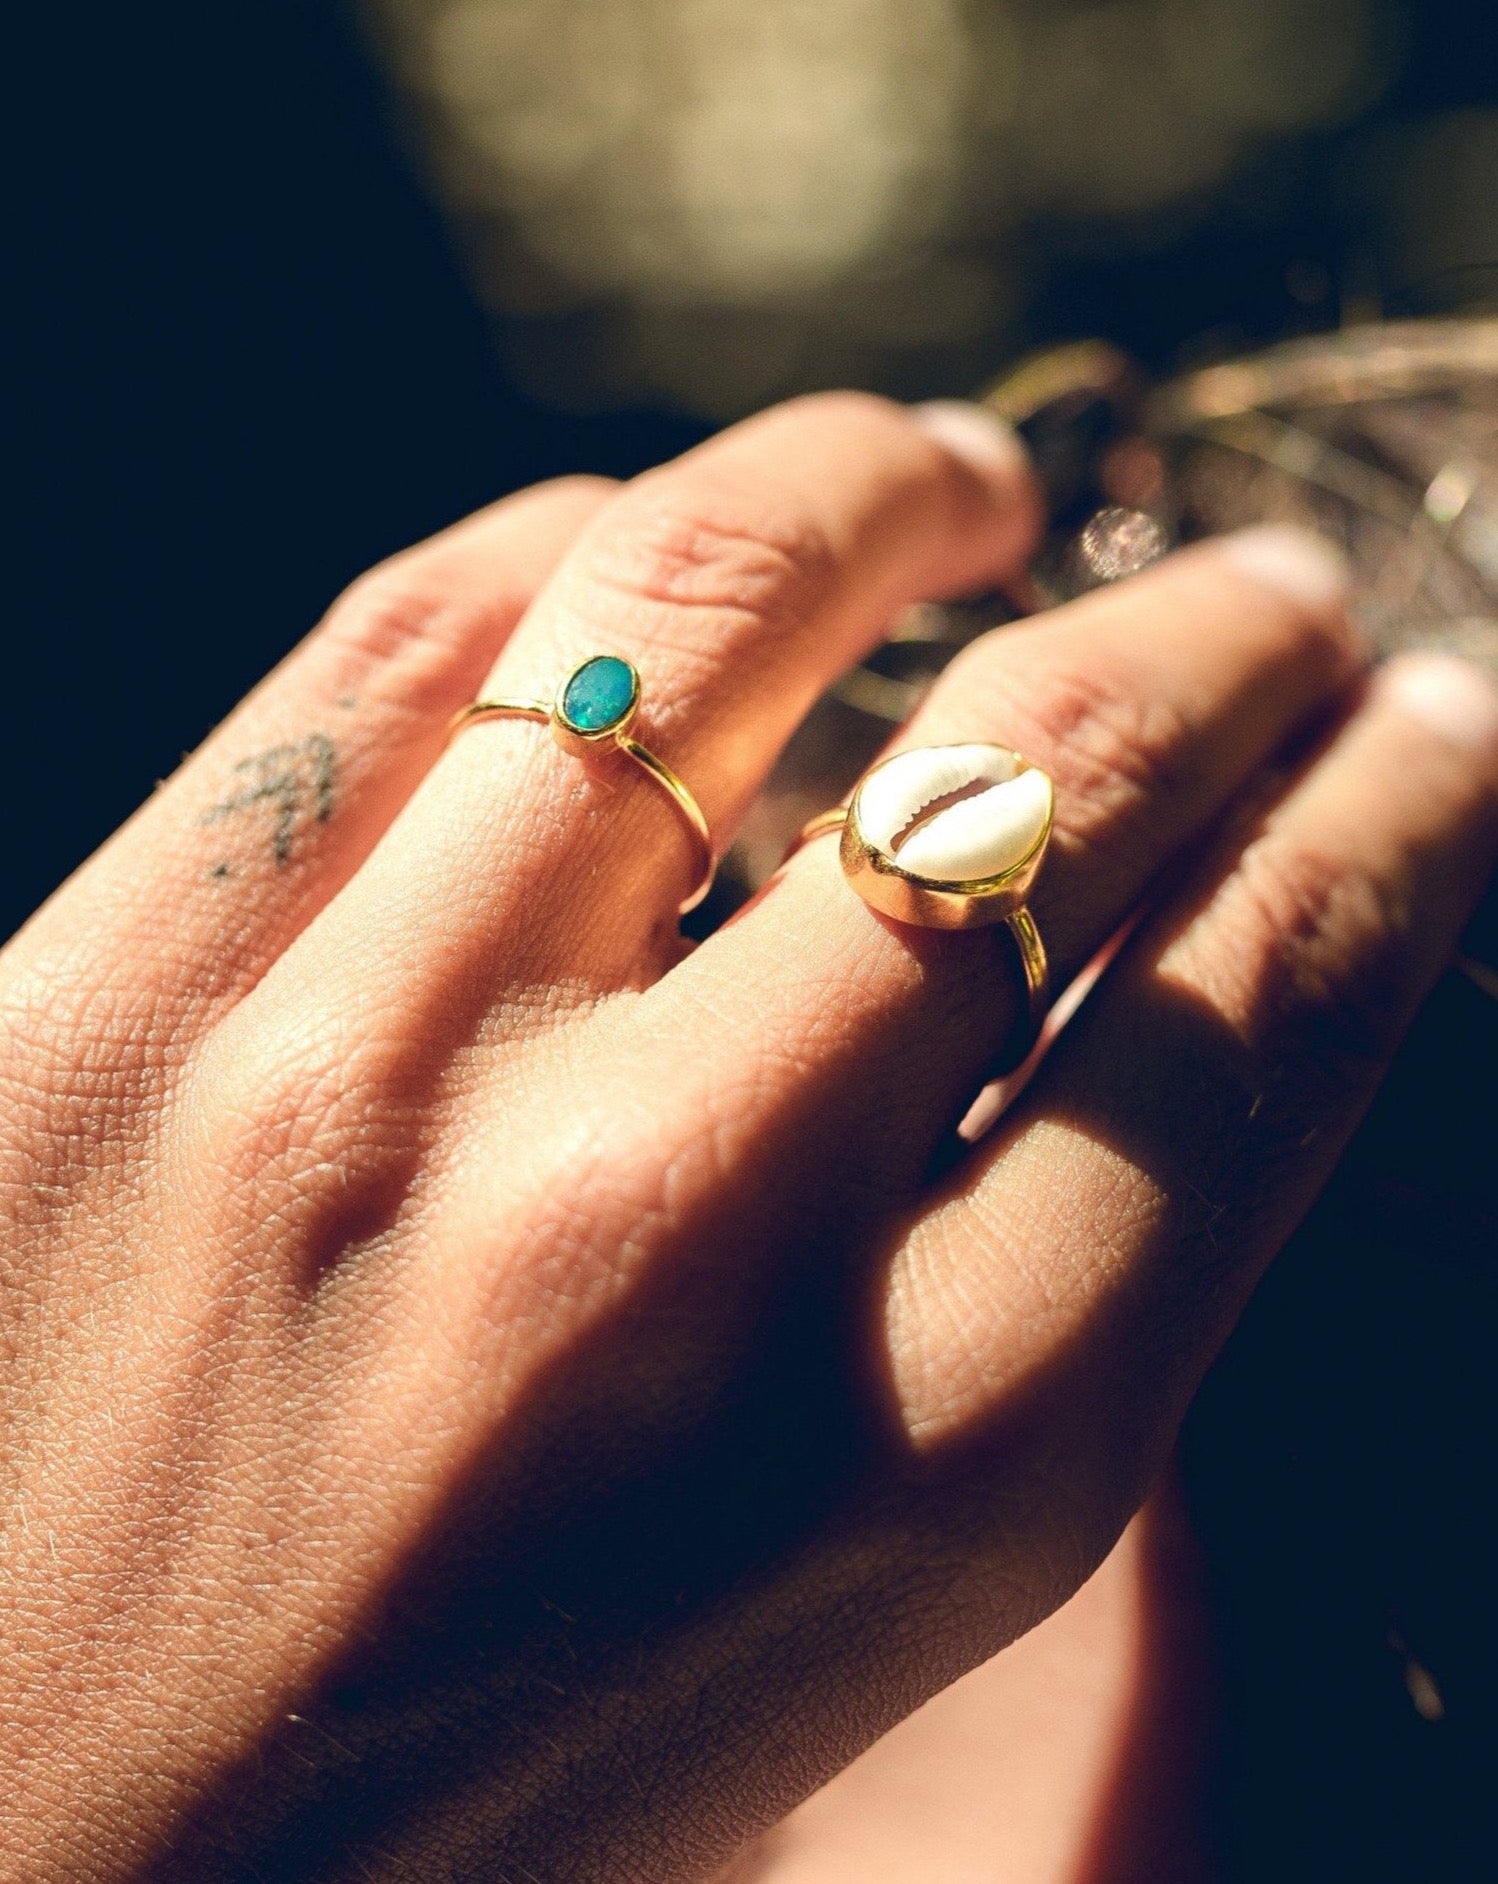 Handmade with love | VERLAN Jewellery | Fairfashion | Handgemachte Ringe im Boho Look aus Bali | Fair und nachhaltig handgefertigter Schmuck | Goldring mit Opal | 925 Silber + Vergoldung